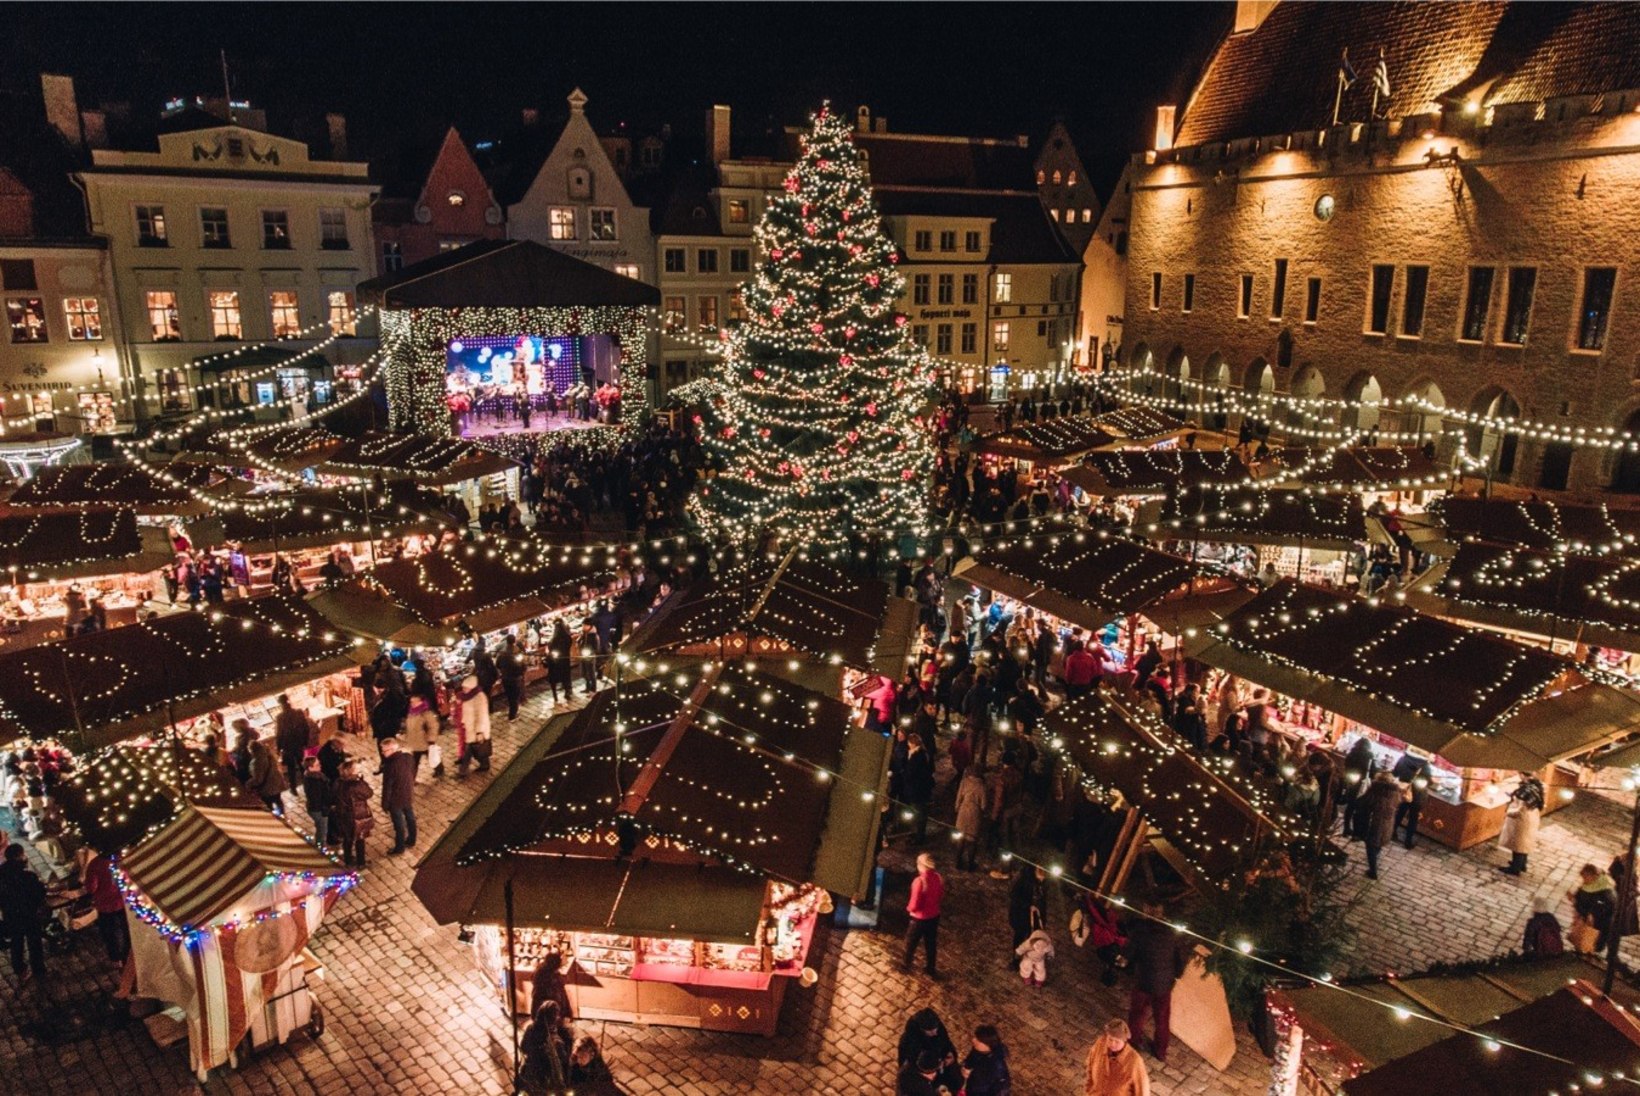 Briti ajaleht kiidab Tallinna: autentne jõuluturg ja mõistlikud hinnad